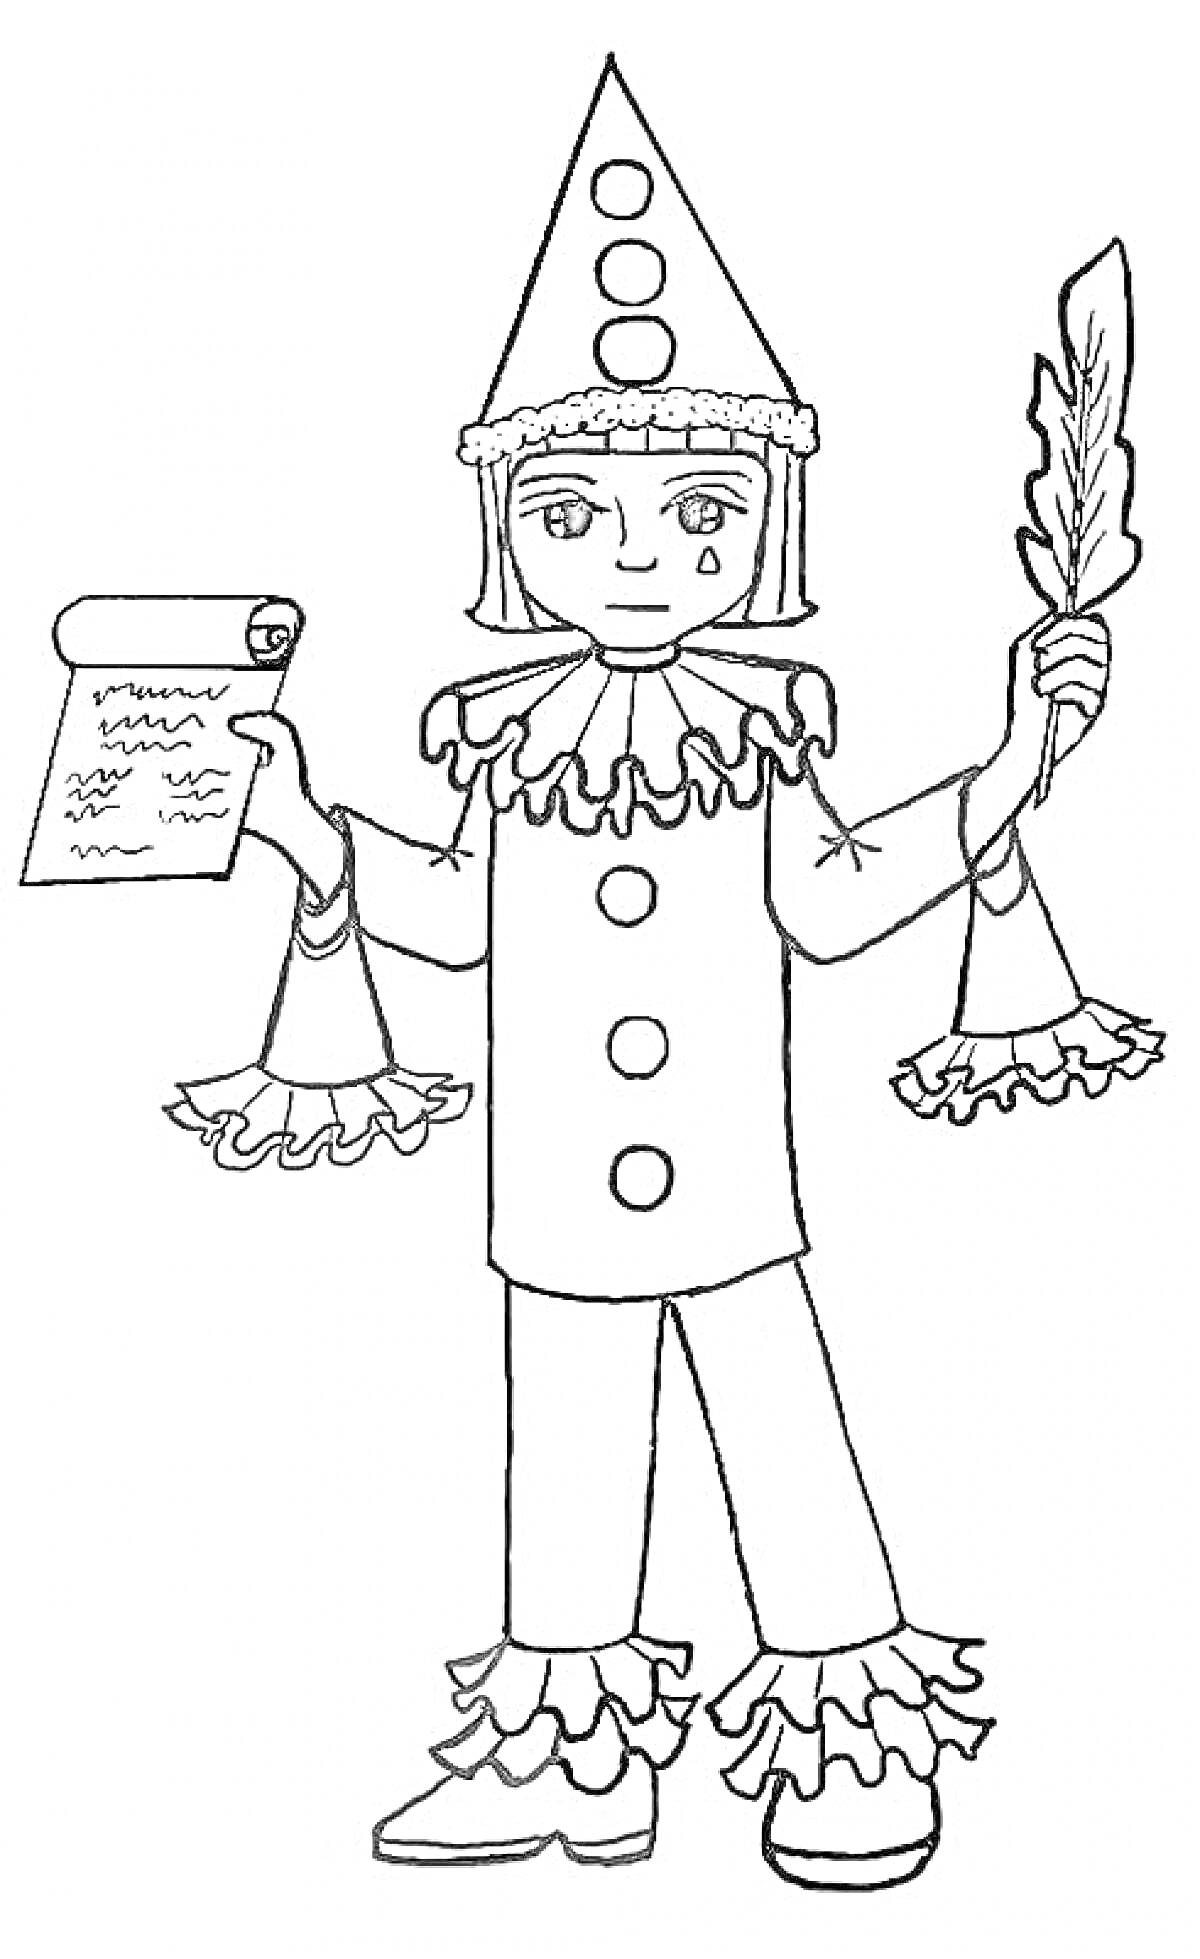 Раскраска Клоун с бумажным свитком и пером, в костюме с колпаком, сборами и большими пуговицами